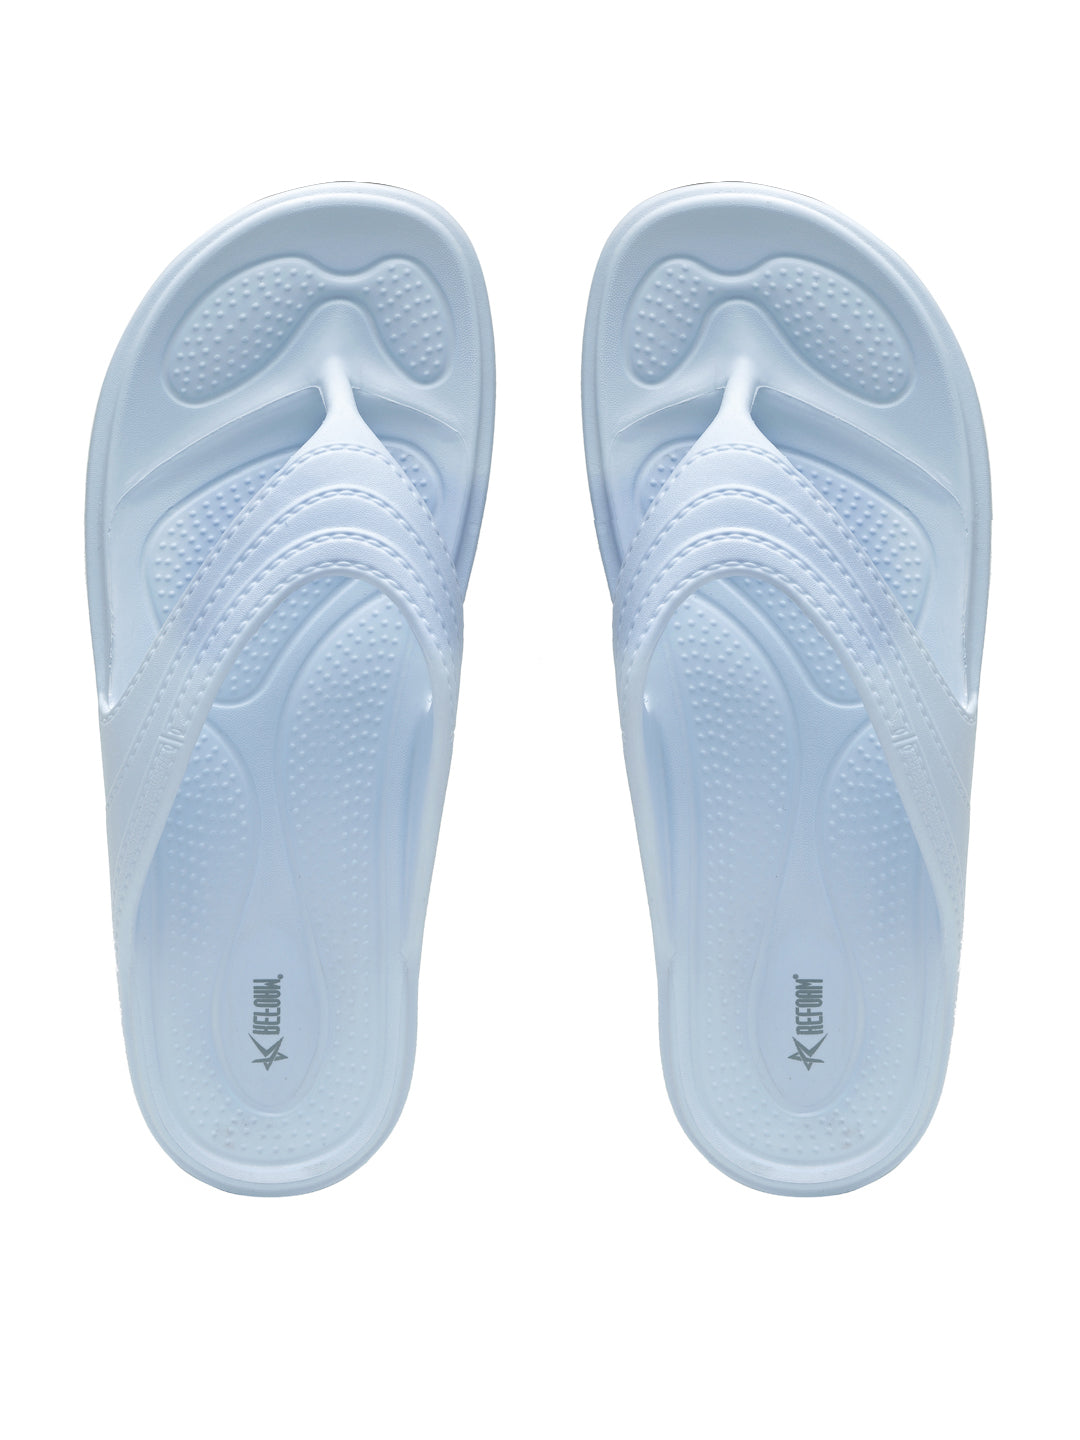 Powder Blue Solid EVA Slip on Slippers For Women's